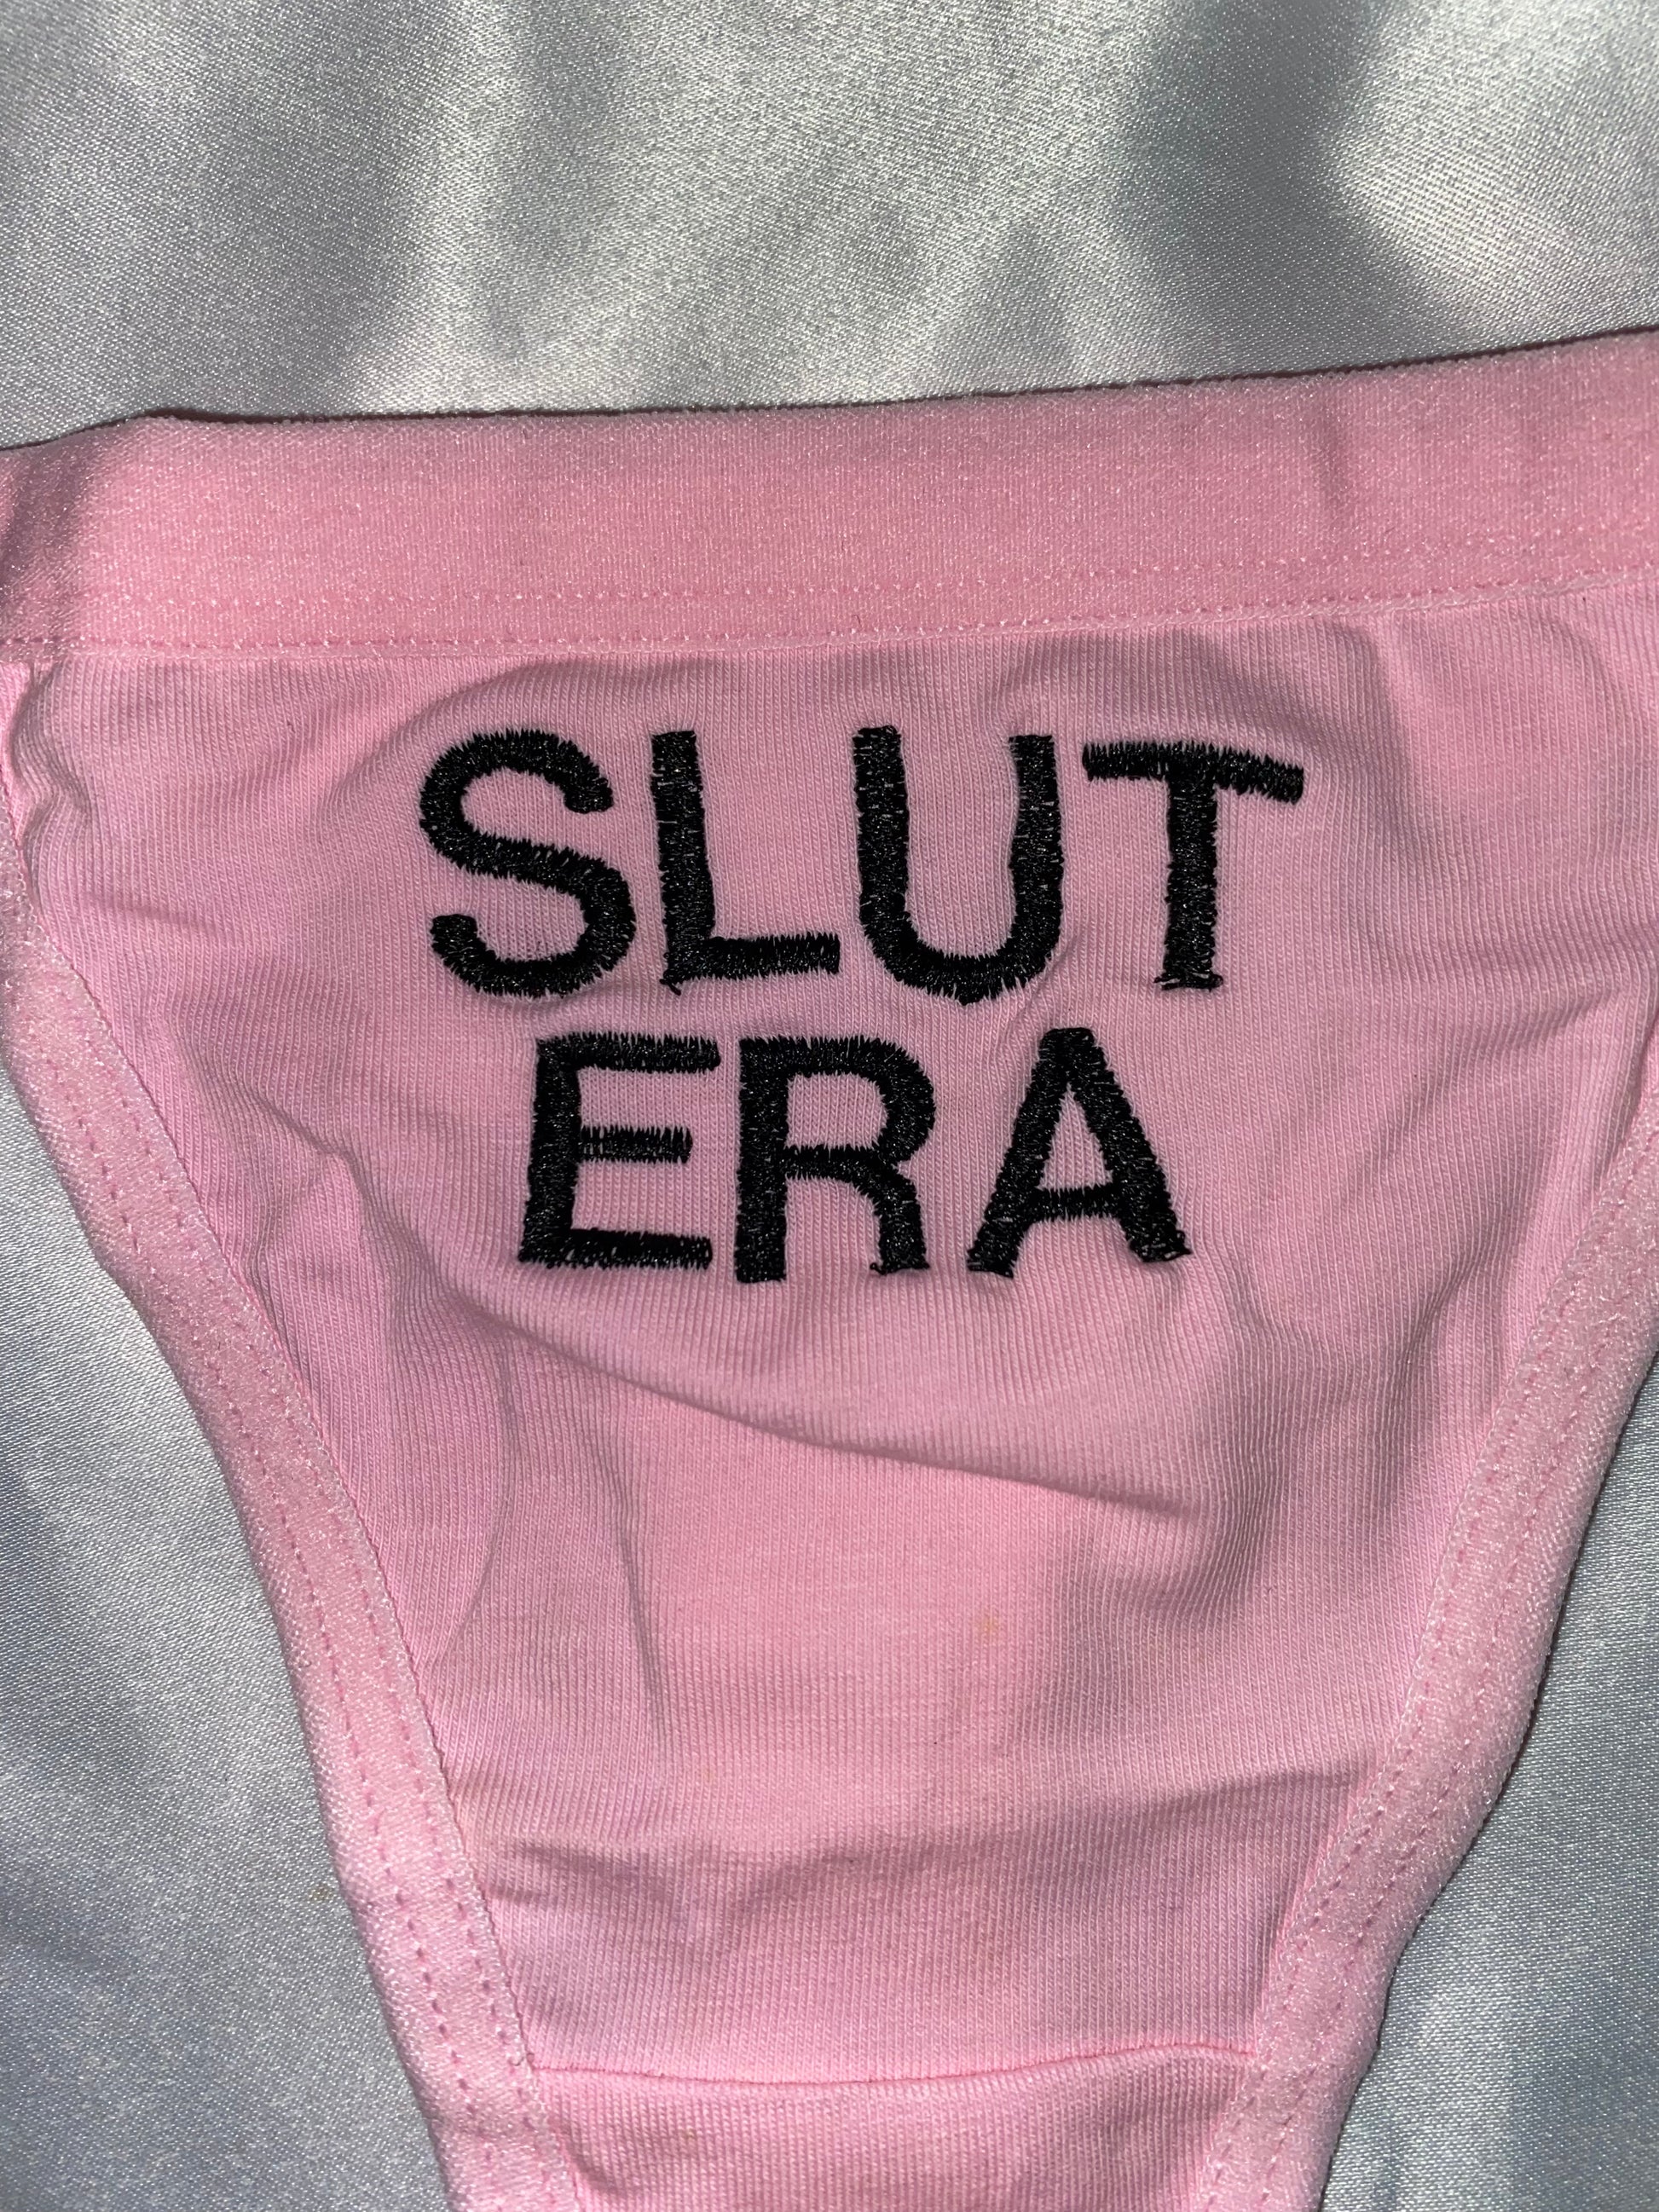 Slut Era Thong